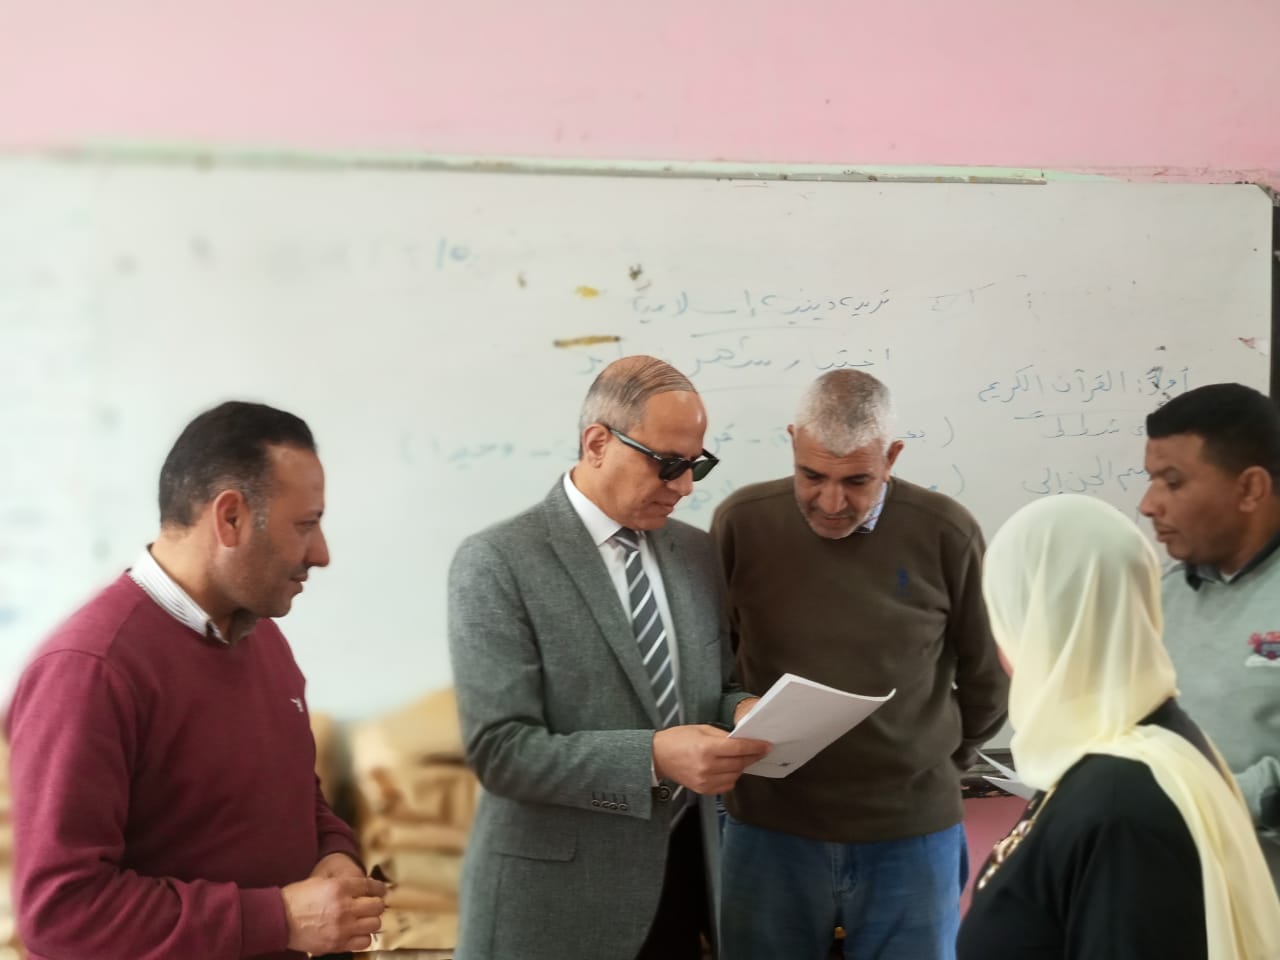  الانتهاء تصحيح امتحانات الشهادة الإعدادية بكفر الشيخ